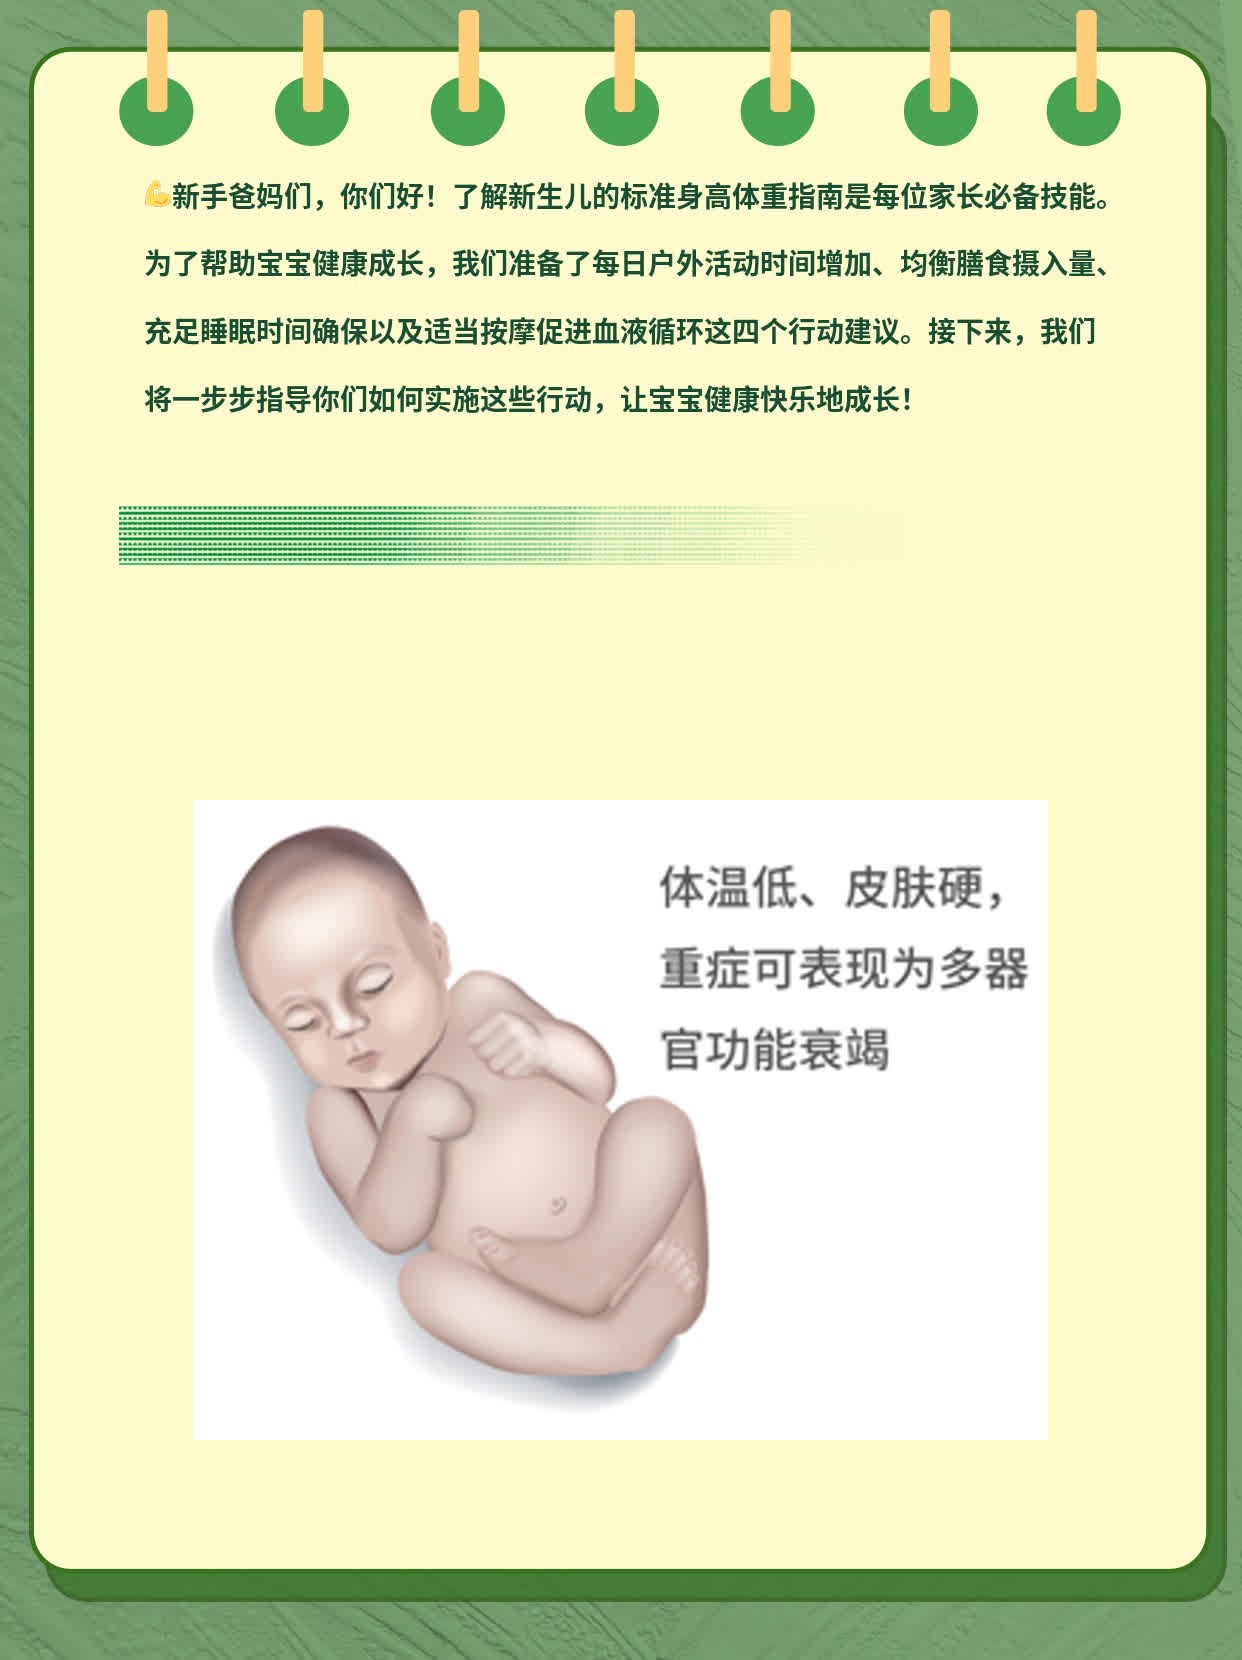 「宝宝成长」：新生儿的标准身高体重指南